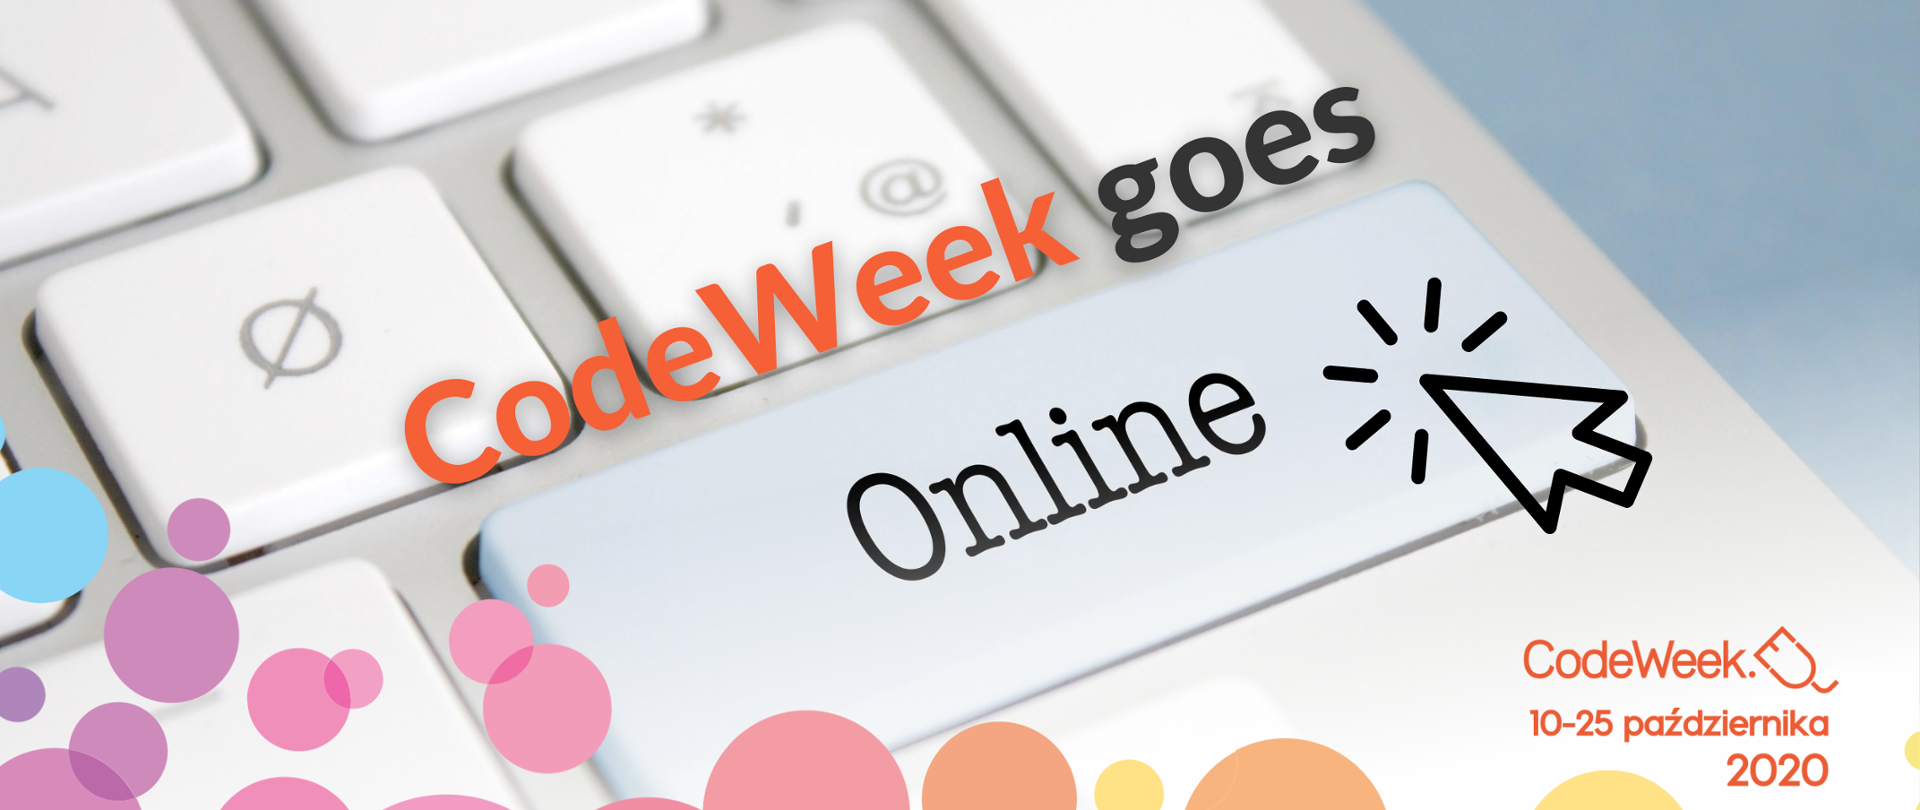 Na zdjęciu widzimy klawiaturę laptopa lub komputera, na której wyświetla się napis: "CodeWeek goes online".